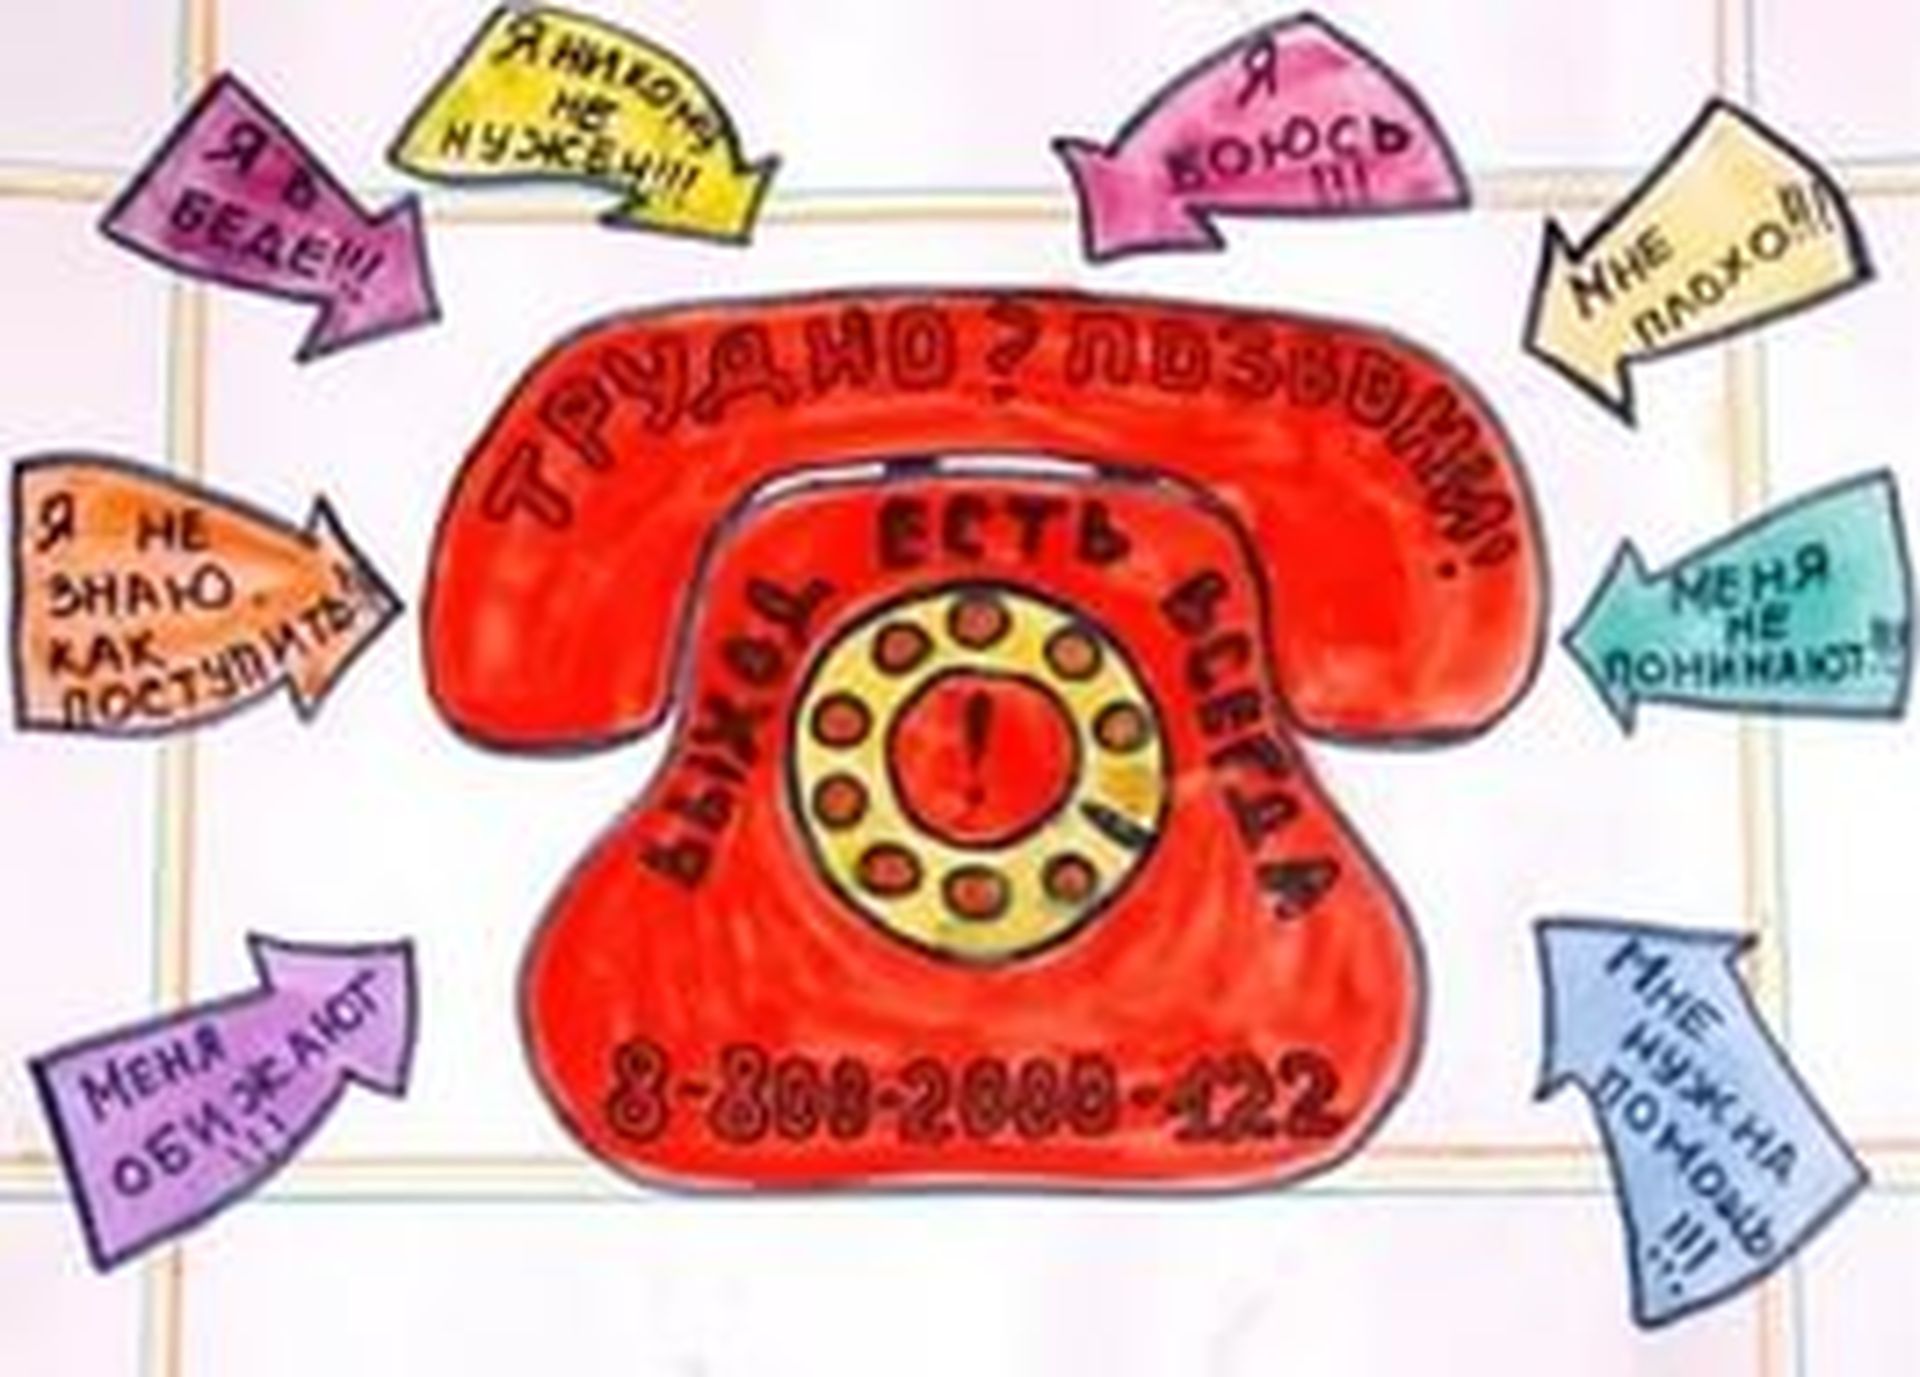 информация о детском телефоне доверия и иных горячих линиях по оказанию психологической помощи.